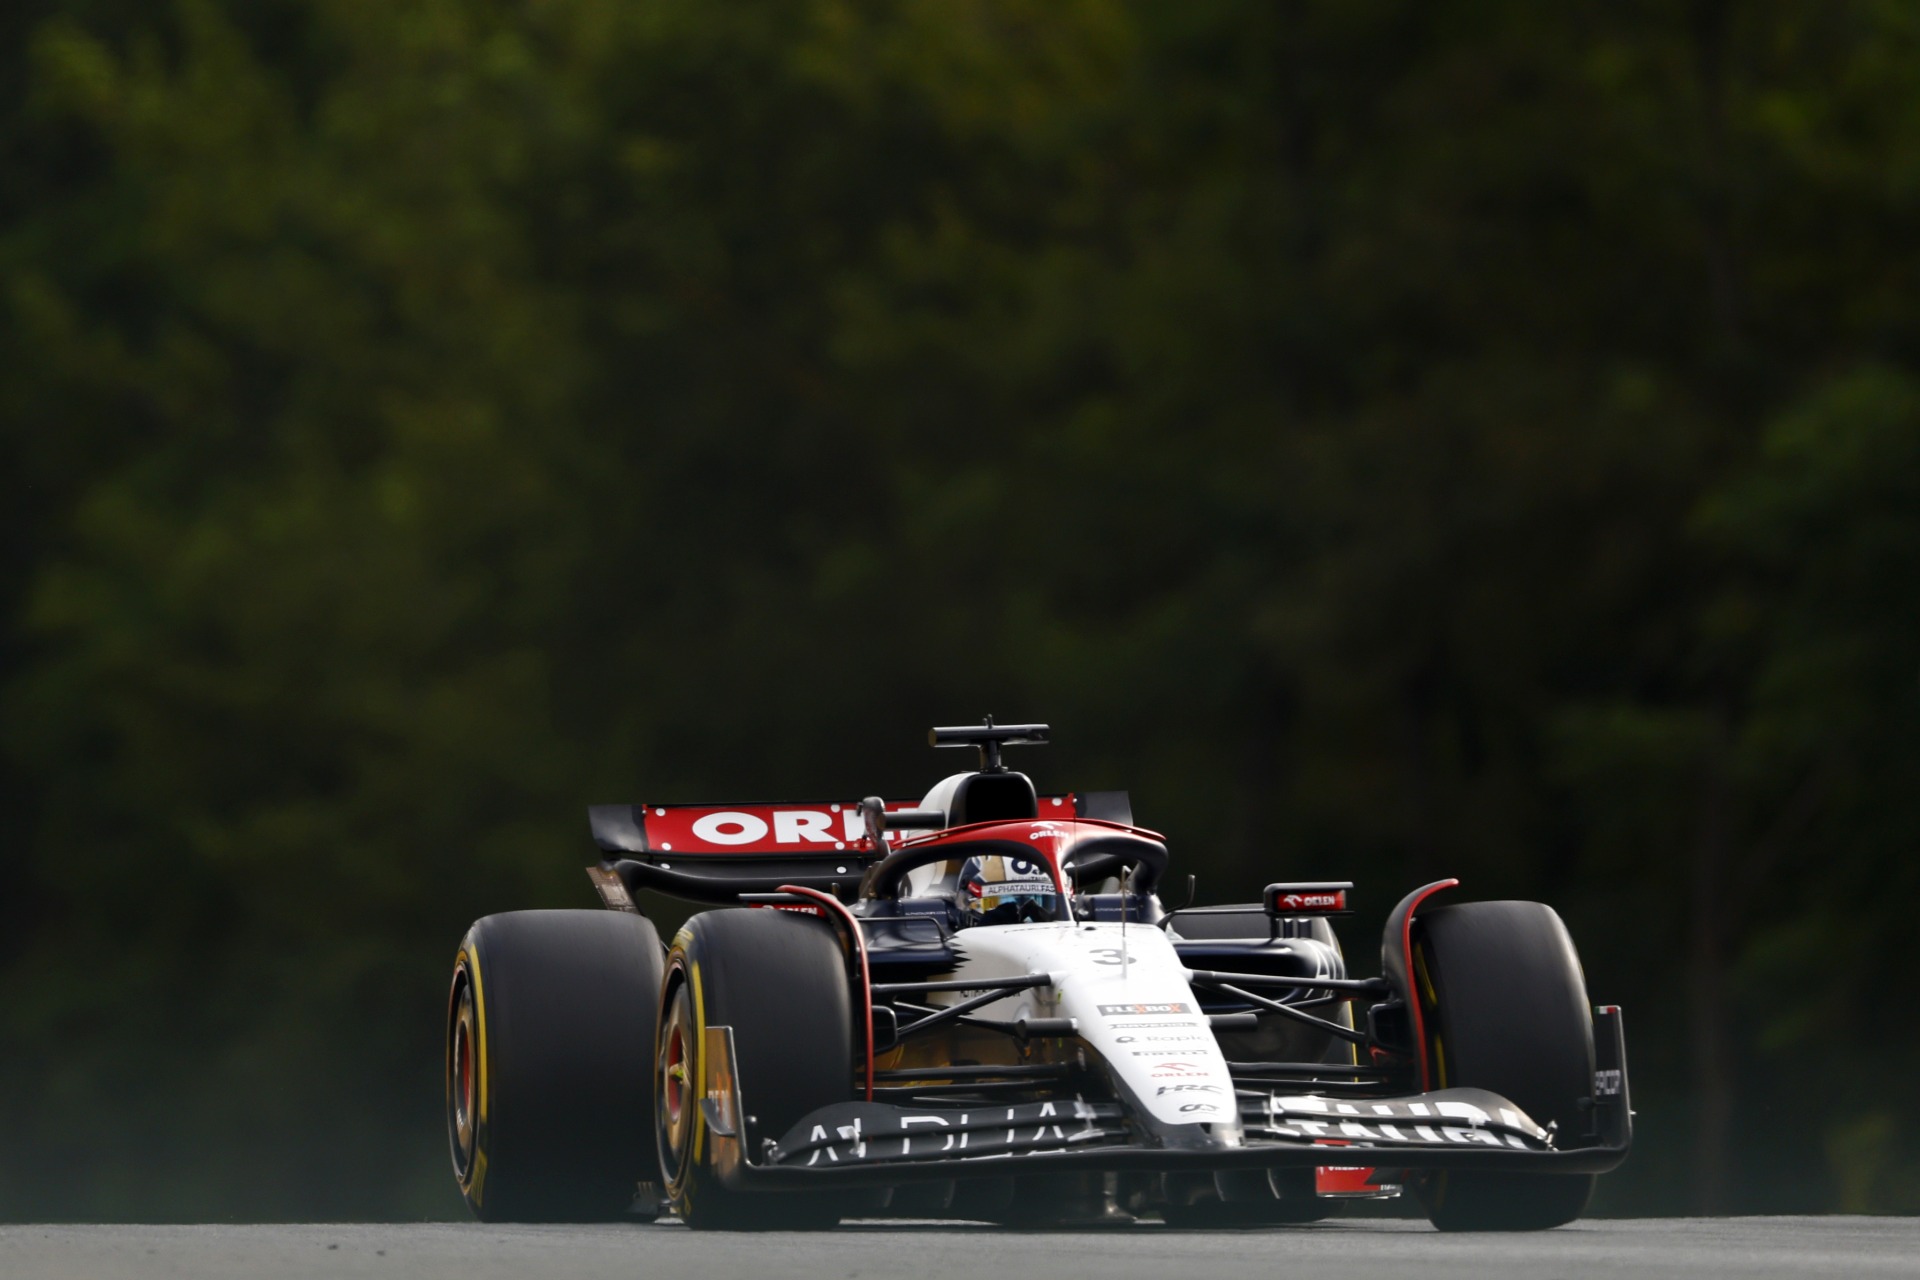 Leclerc na frente e Verstappen fora do top-10 nos treinos livres na Hungria  - Fórmula 1 - Grande Prêmio - Fórmula 1 - Grande Prêmio